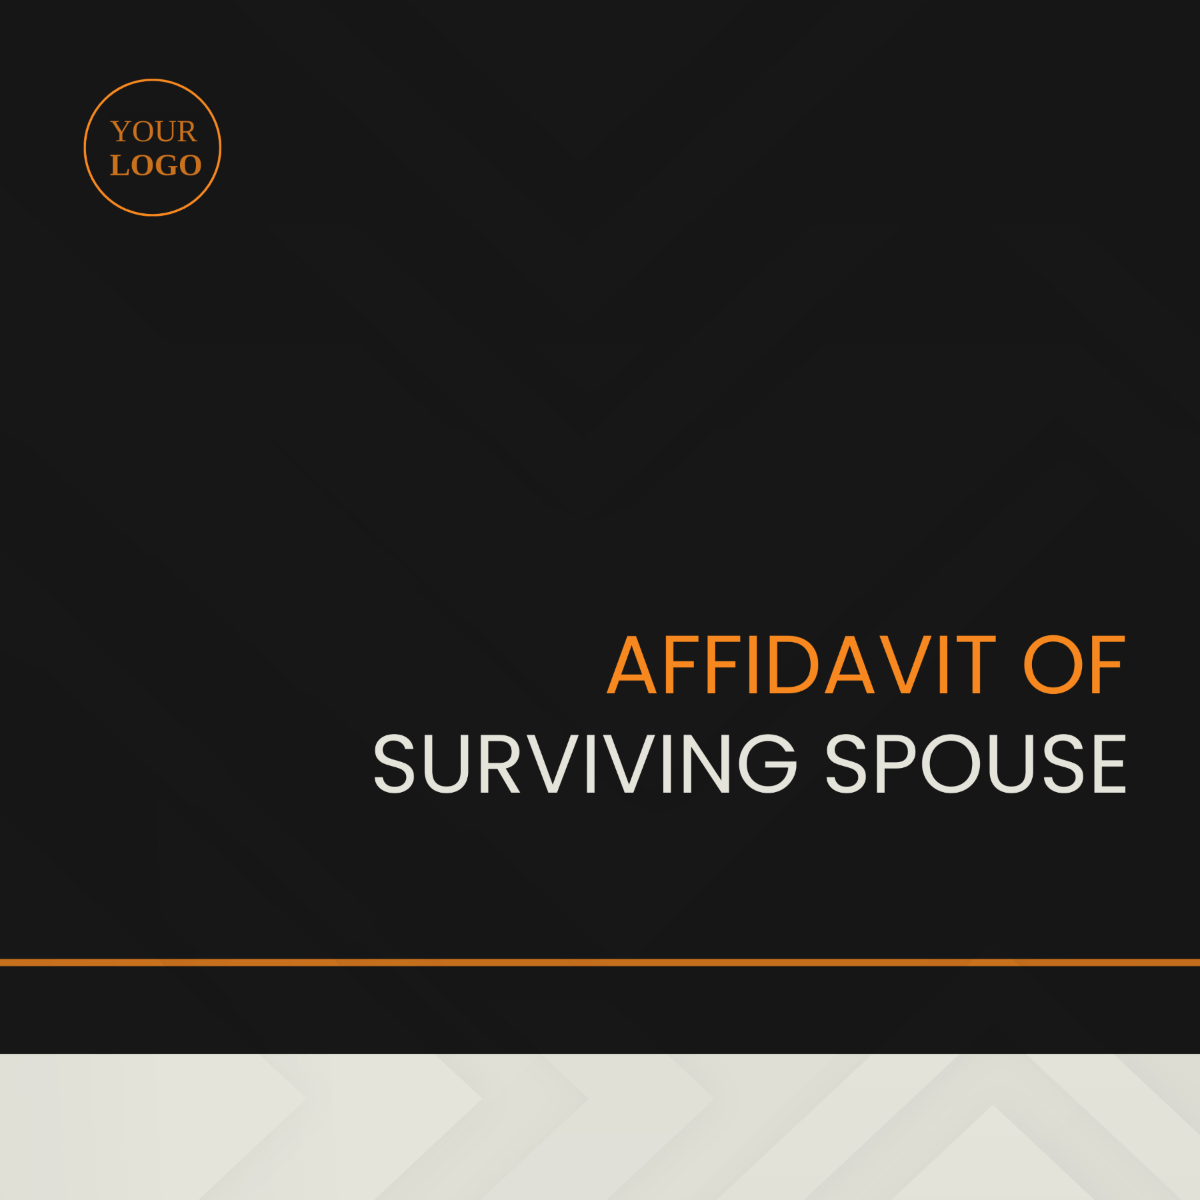 Affidavit of Surviving Spouse Template